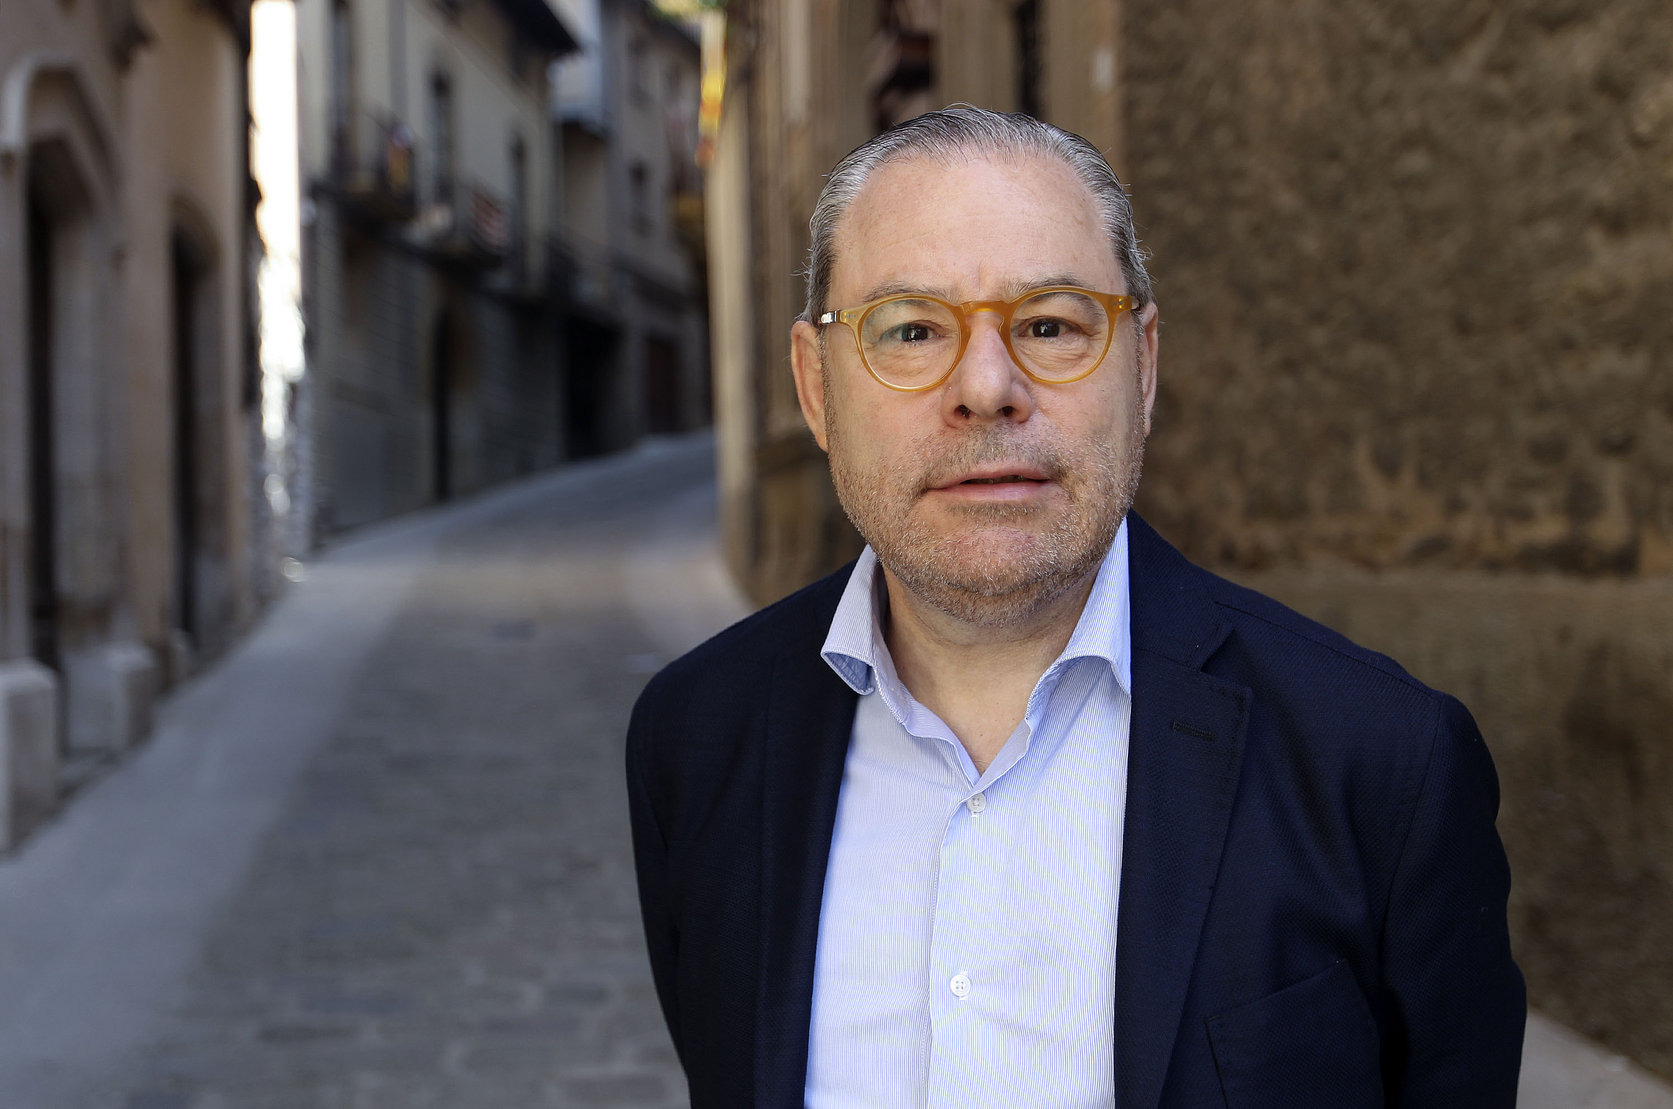 El regidor de Vic i diputat a la Diputació de Barcelona per JxCat, Josep Arimany